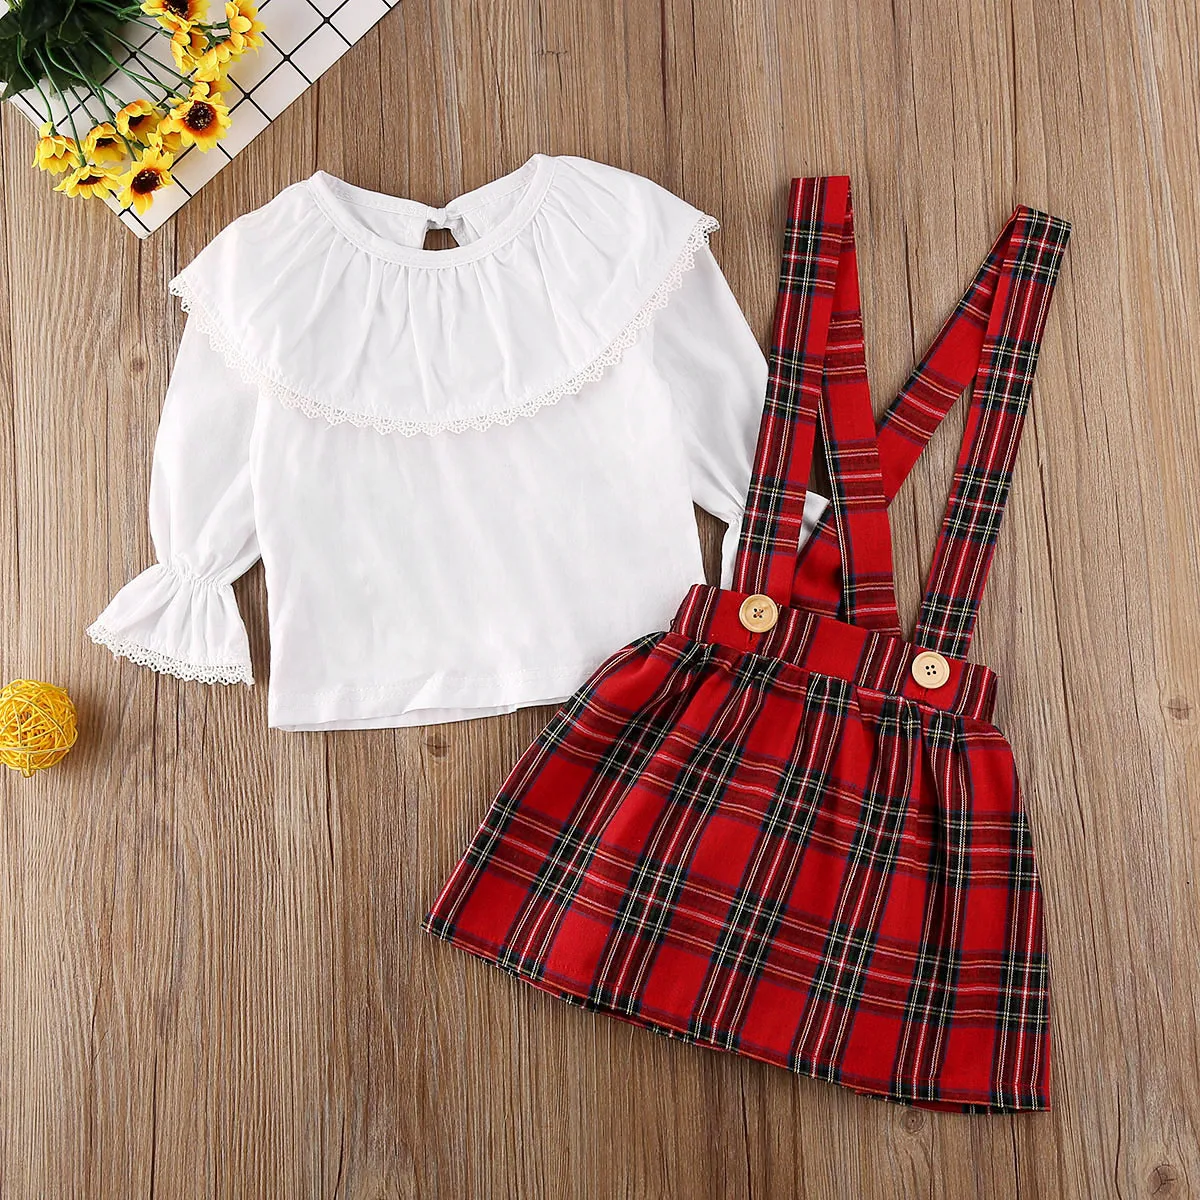 Осенне-осенняя Рождественская Одежда для новорожденных девочек, белый топ с оборками, клетчатая юбка на бретелях, комплект одежды